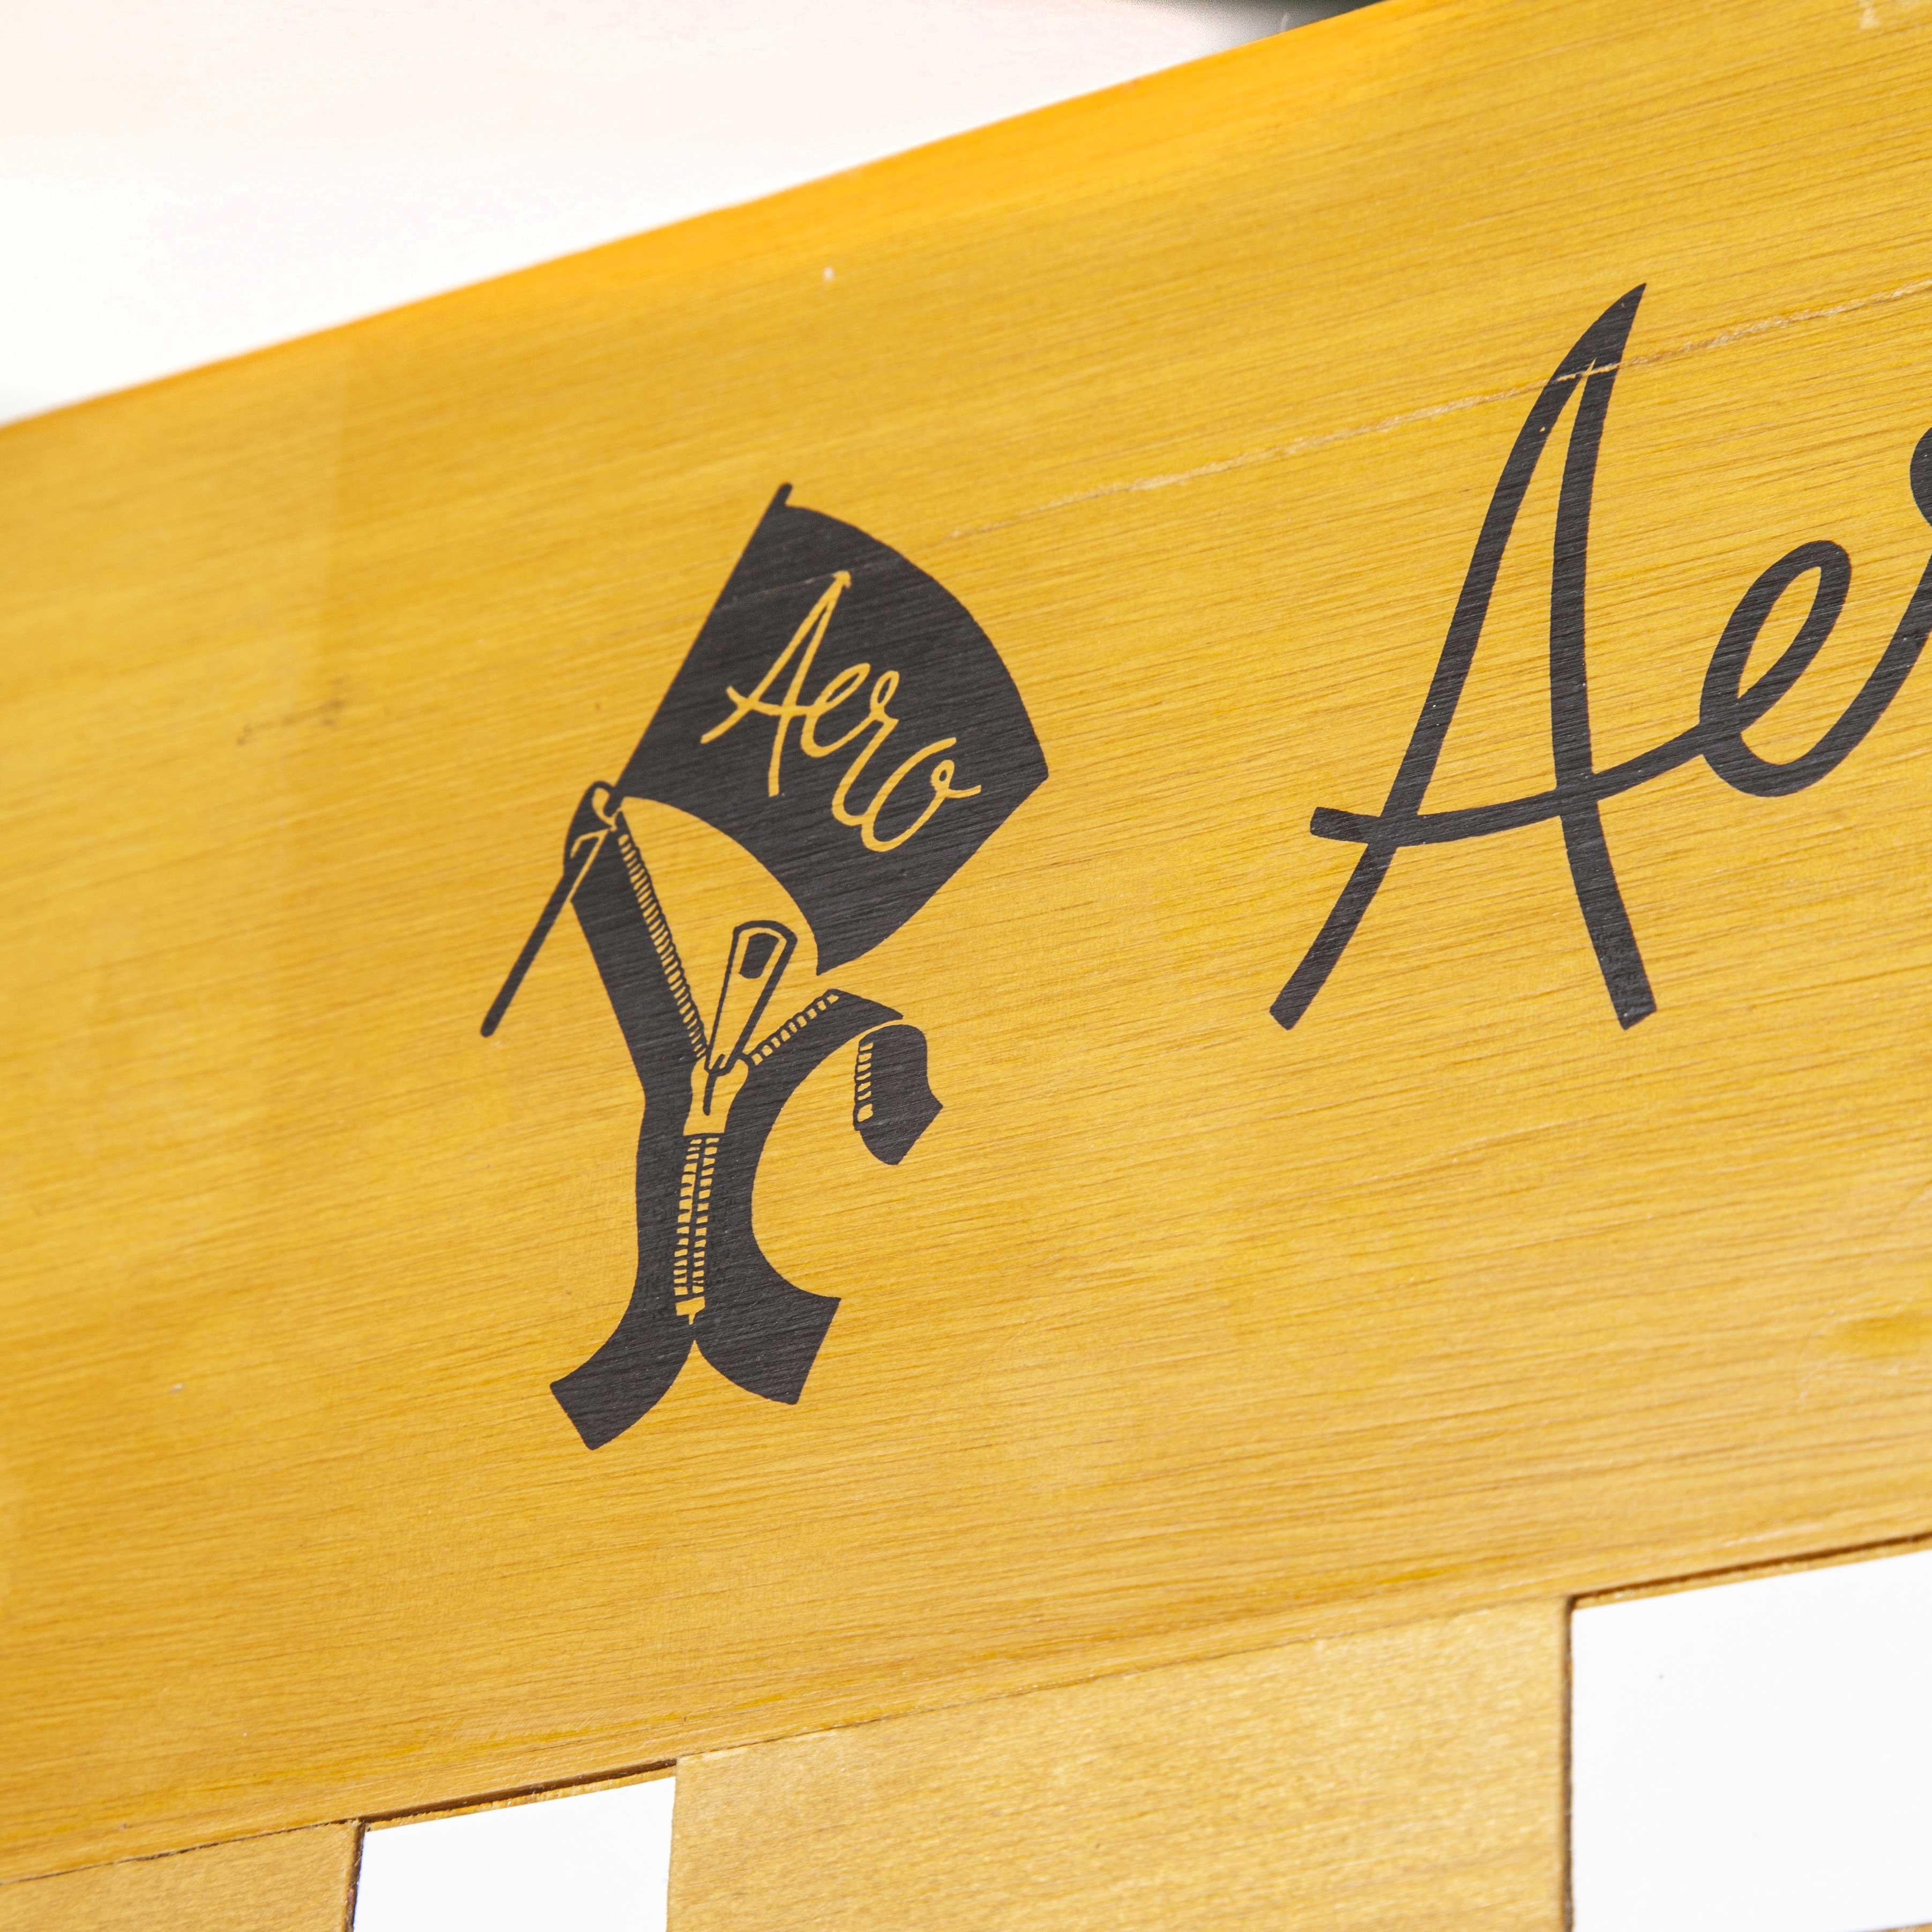 20e siècle Présentoir de mercerie à glissière Aéro - meuble de rangement. Aero zippers est une entreprise britannique fondée dans les années 80 et toujours en activité. Nous sommes tombés amoureux du graphisme, de la grande échelle et des